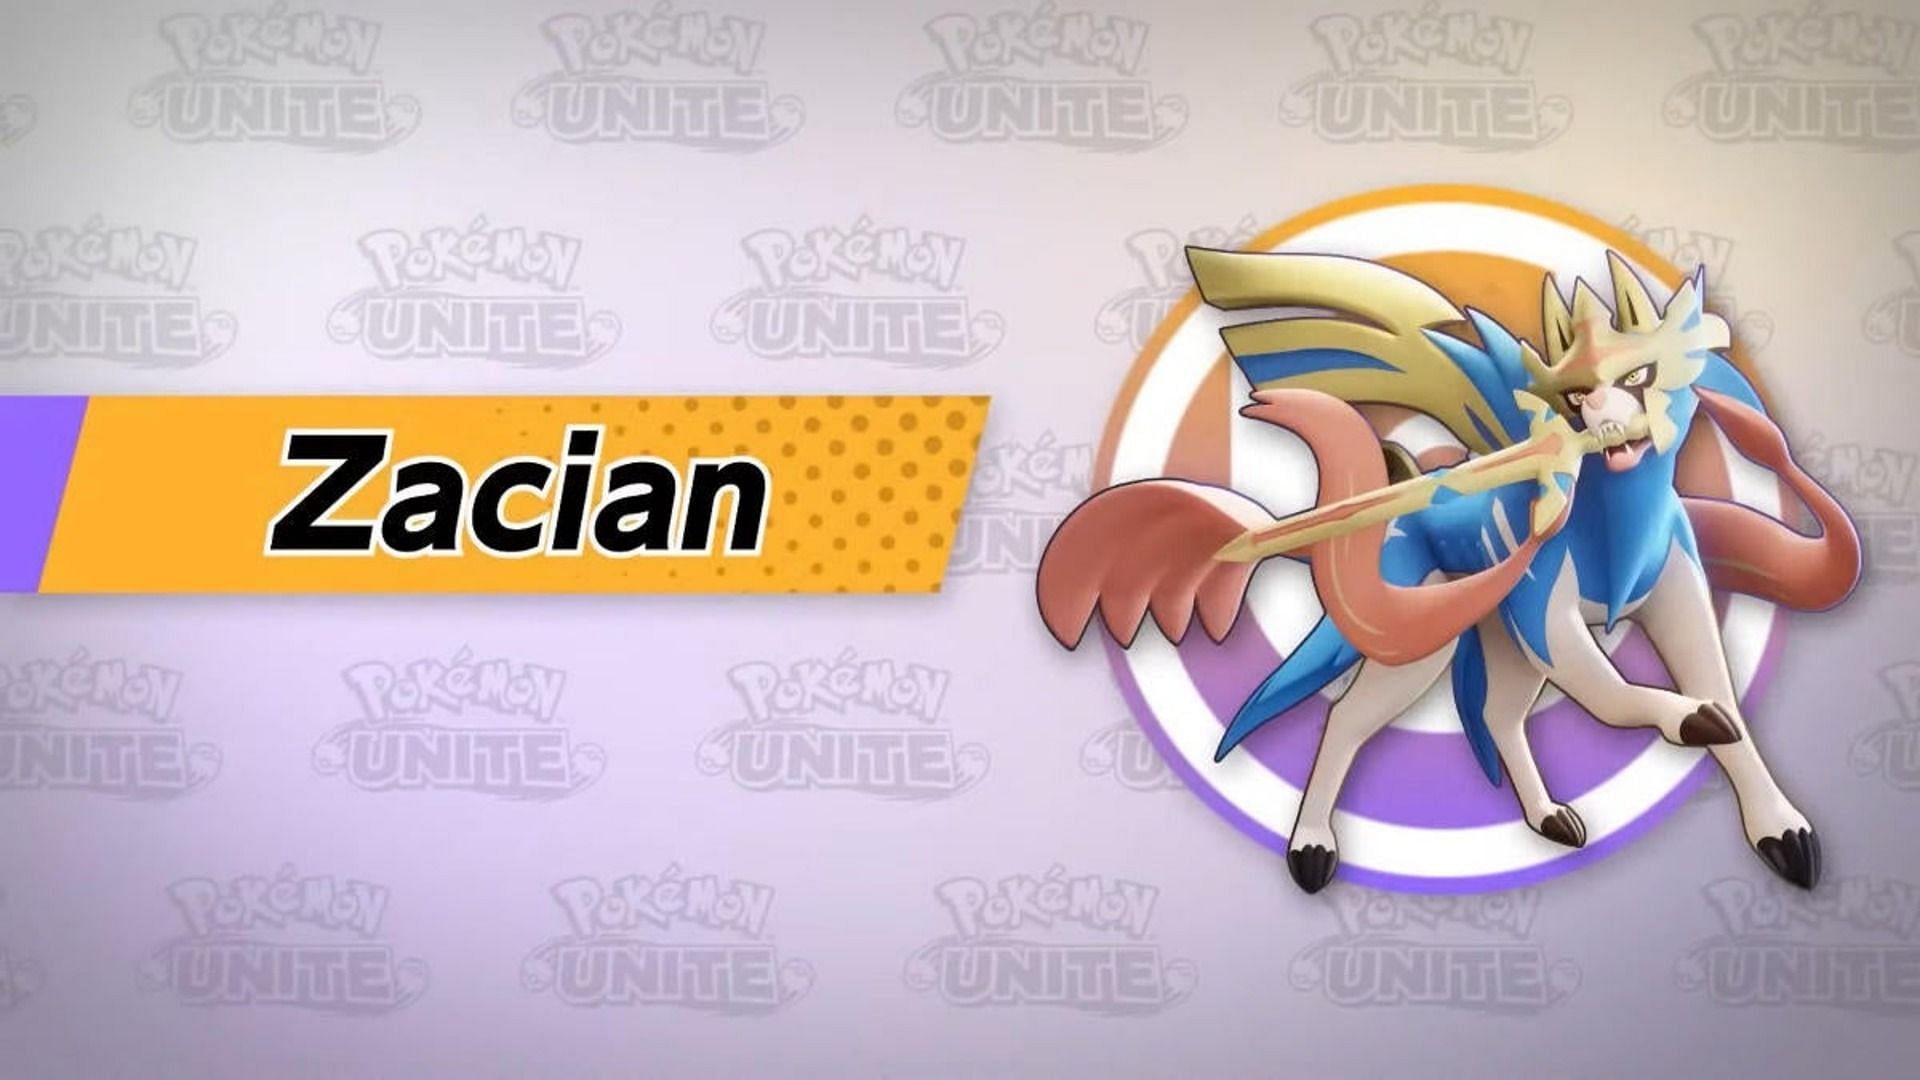 Official artwork for Zacian in Pokemon Unite (Image via The Pokemon Company)